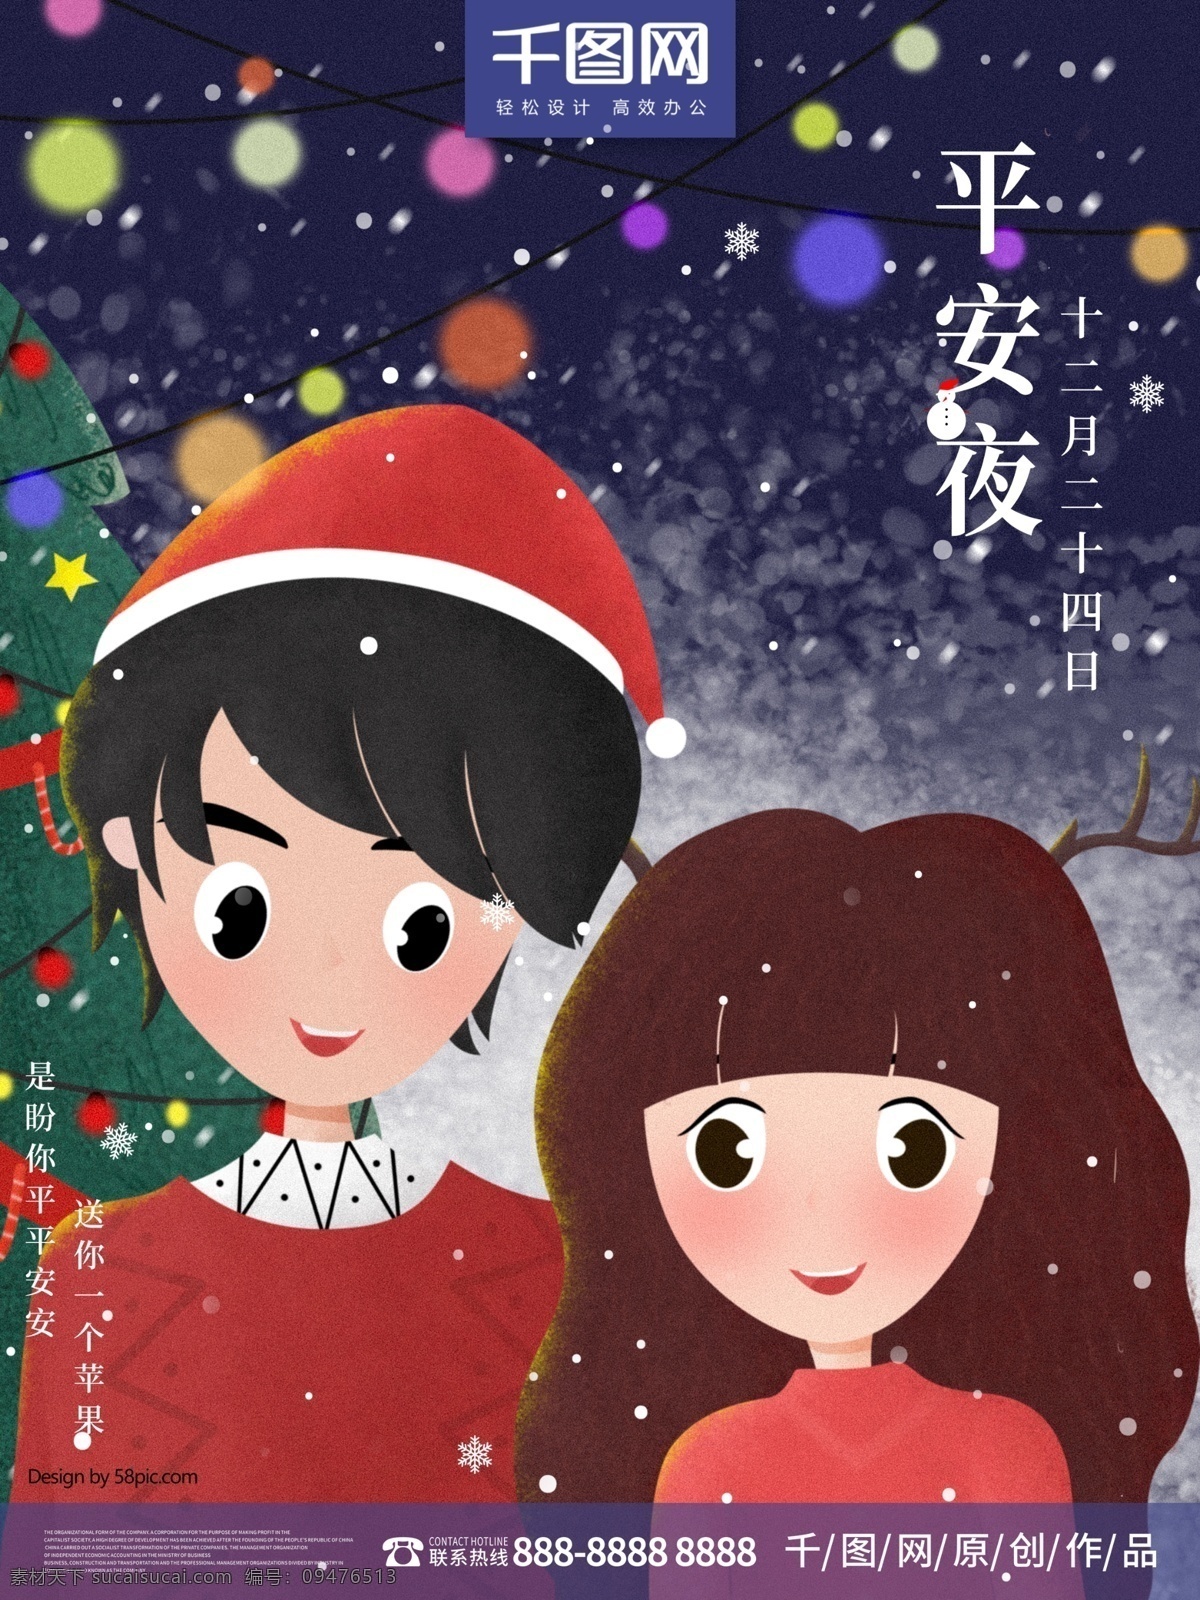 原创 小清 新手 绘 冬季 平安夜 情侣 海报 插画 圣诞节 小清新 可爱 手绘 雪